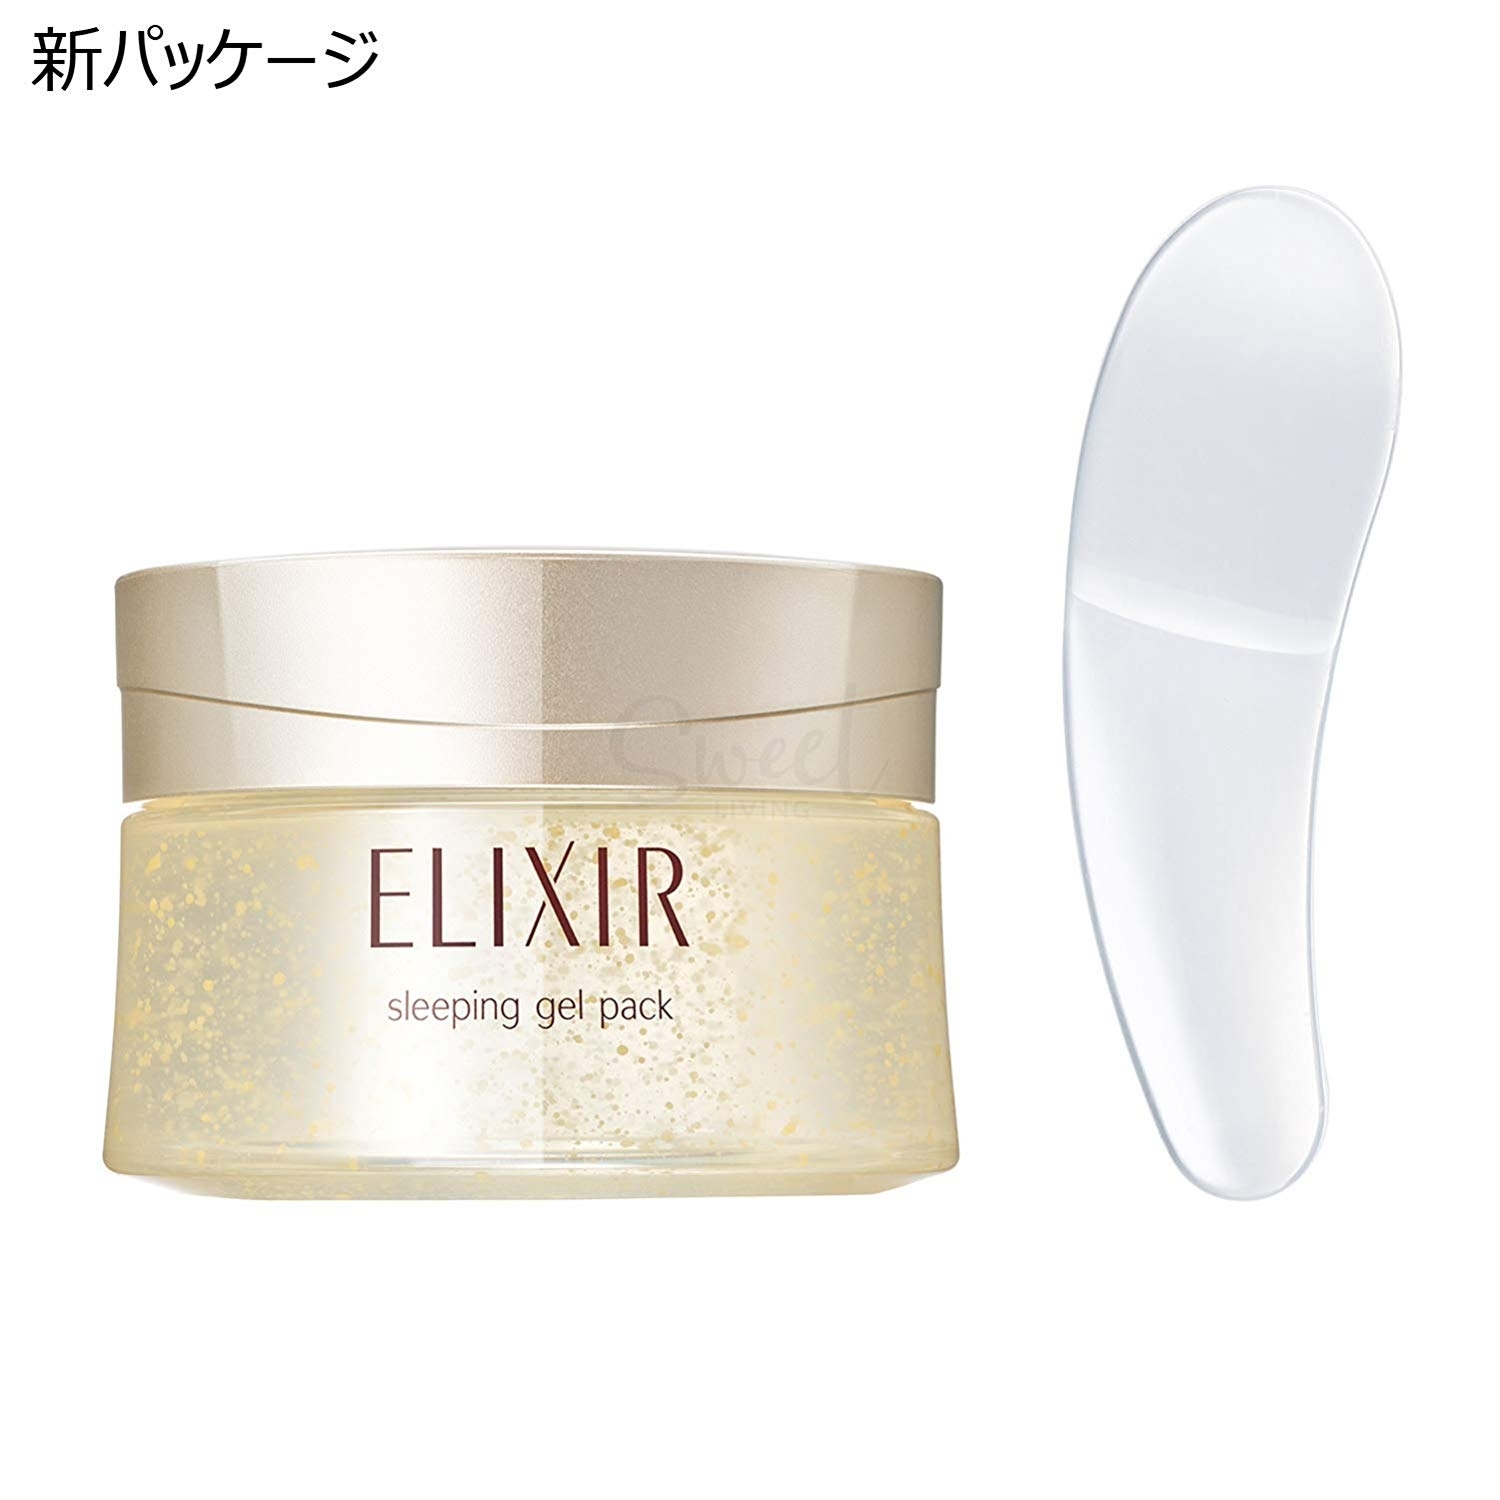 【日本 Elixir】资生堂elixir/怡丽丝尔睡眠面膜 免洗面膜补水保湿 -  - 7@ - Sweet Living